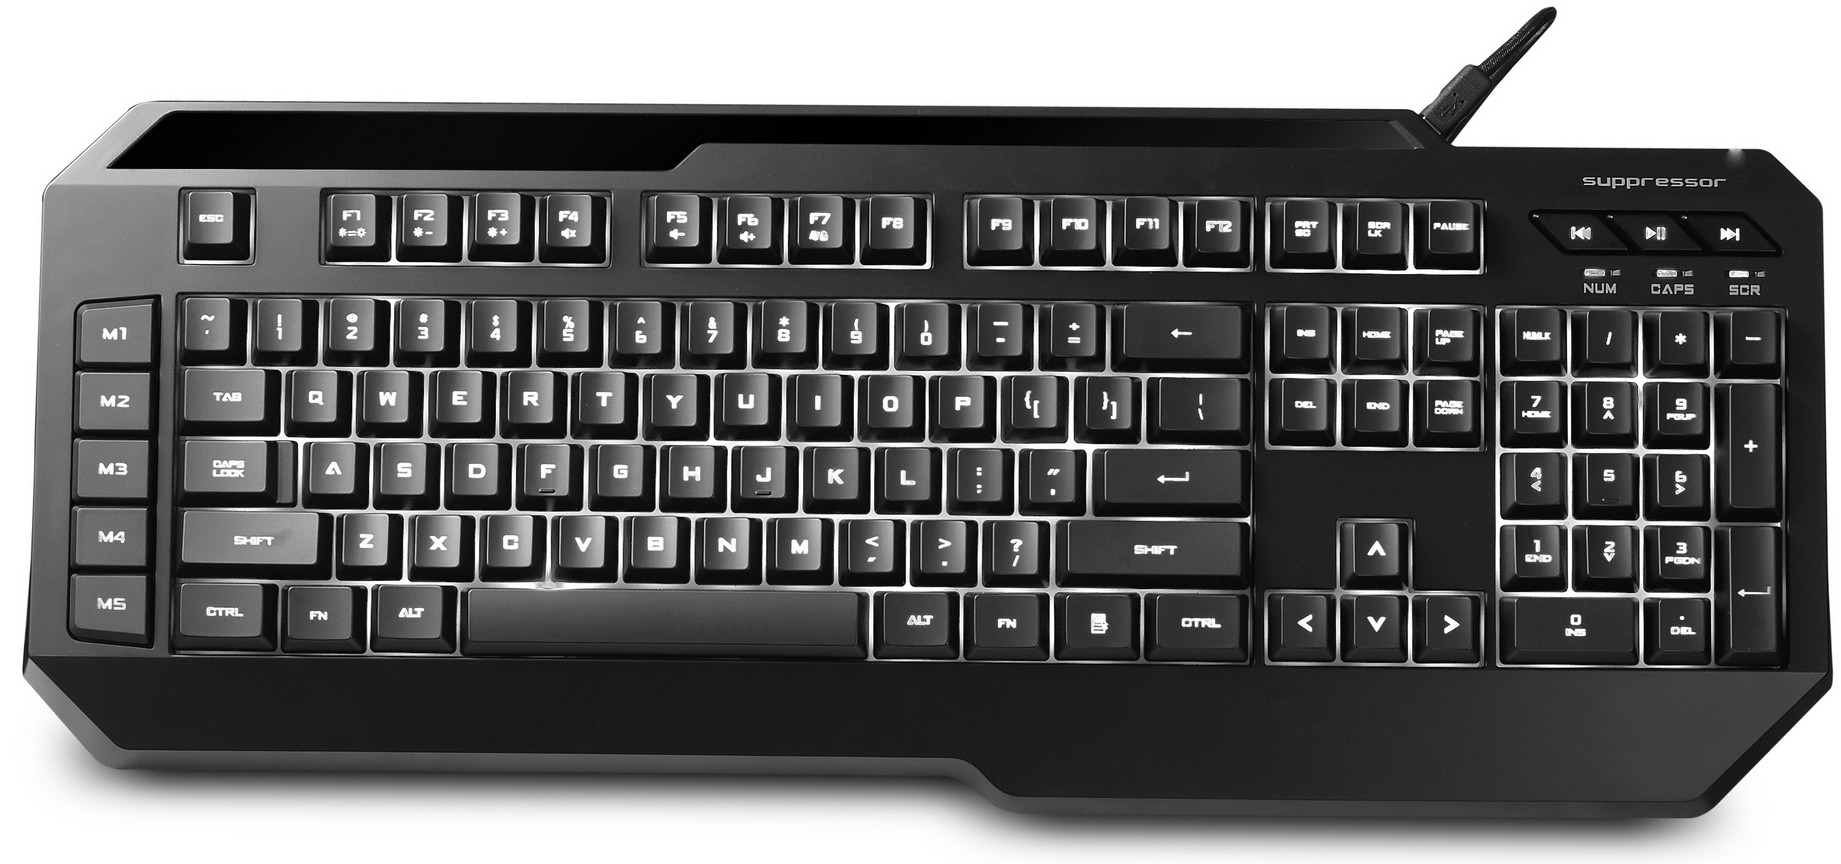 Бесшумная игровая клавиатура CM Storm Suppressor выйдет на российский рынок